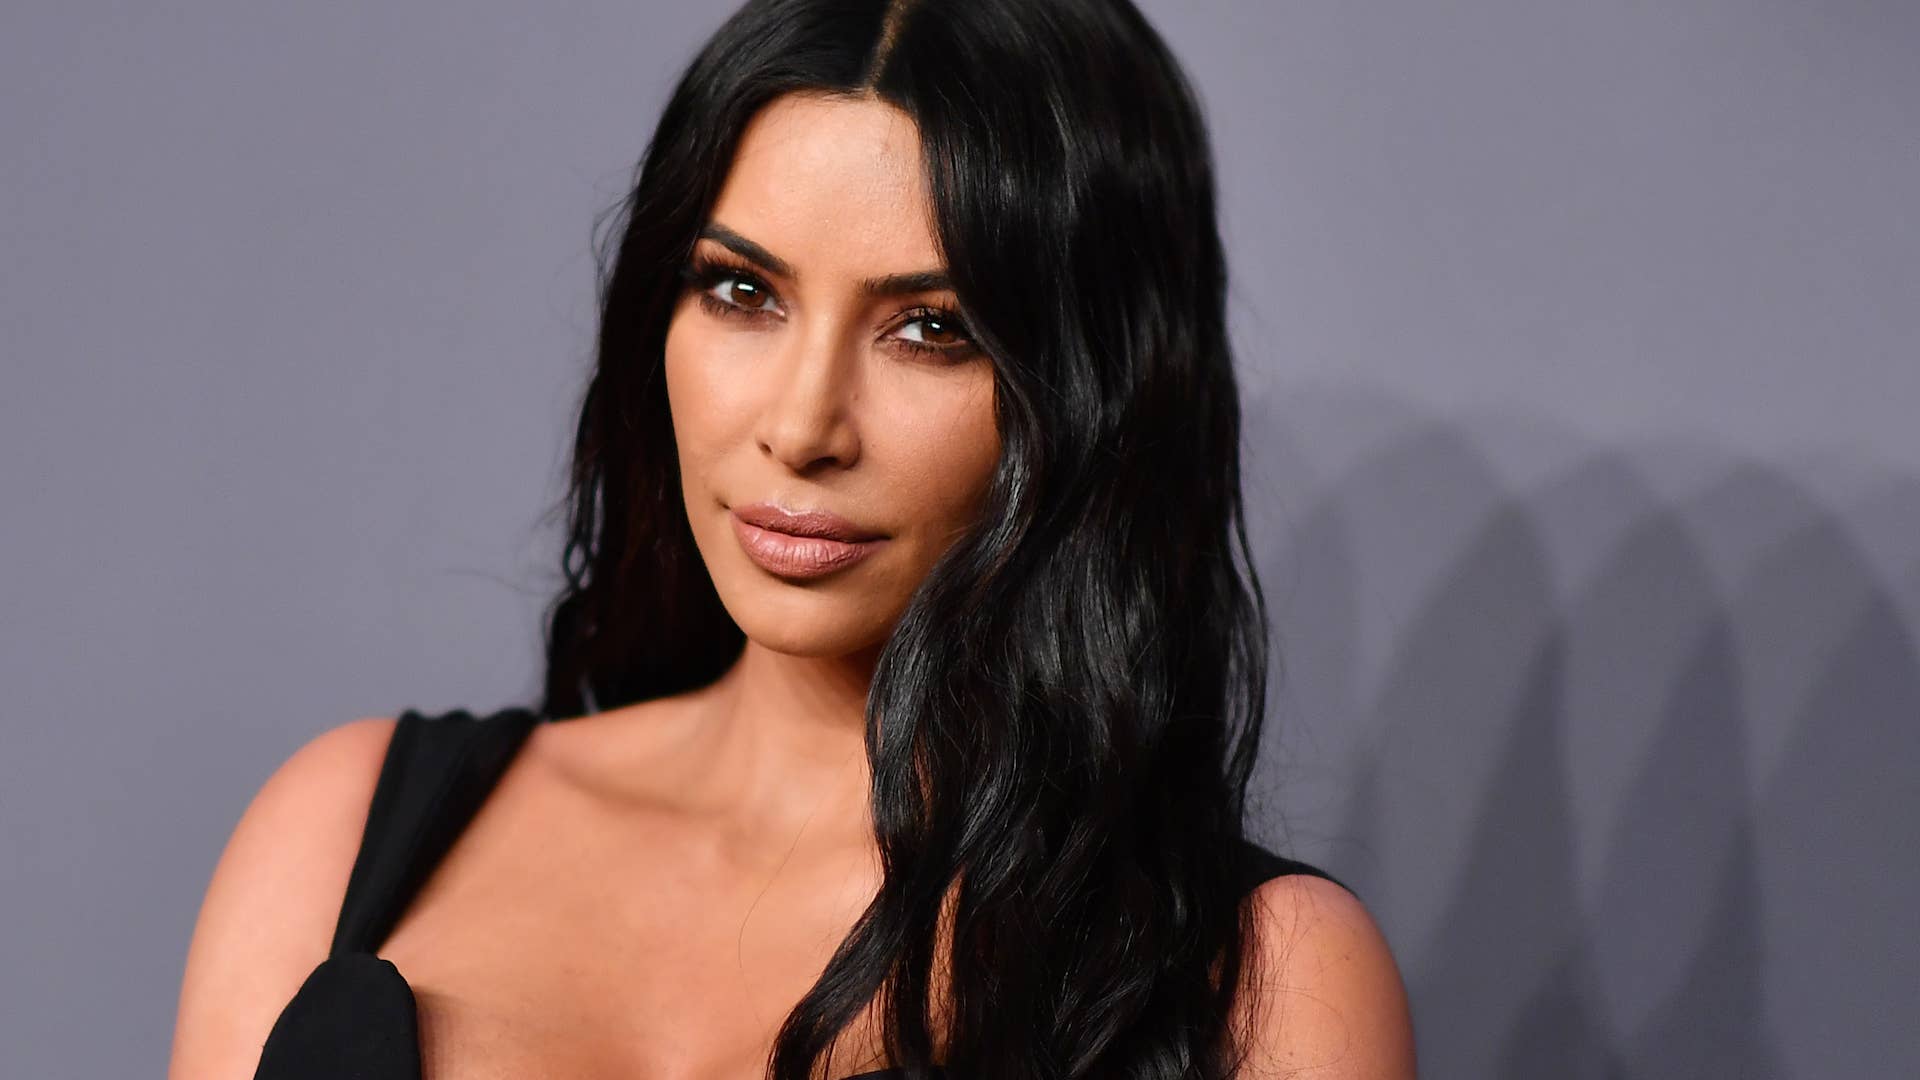 US media personality Kim Kardashian West